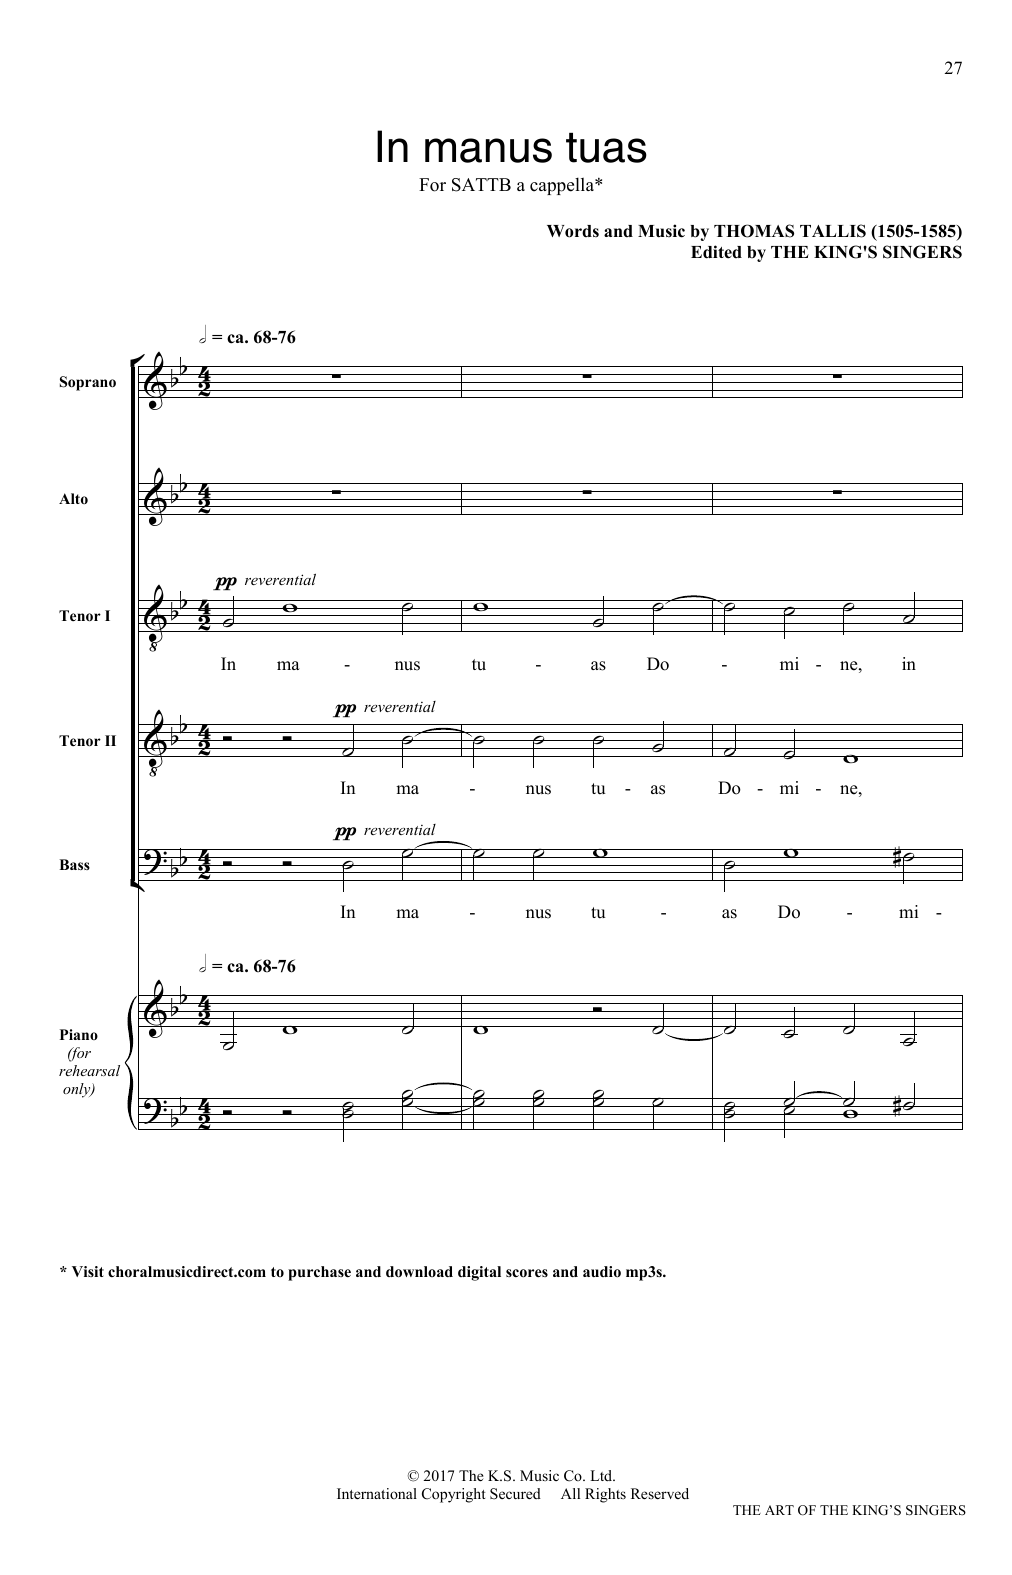 Download Thomas Tallis In Manus Tuas Sheet Music